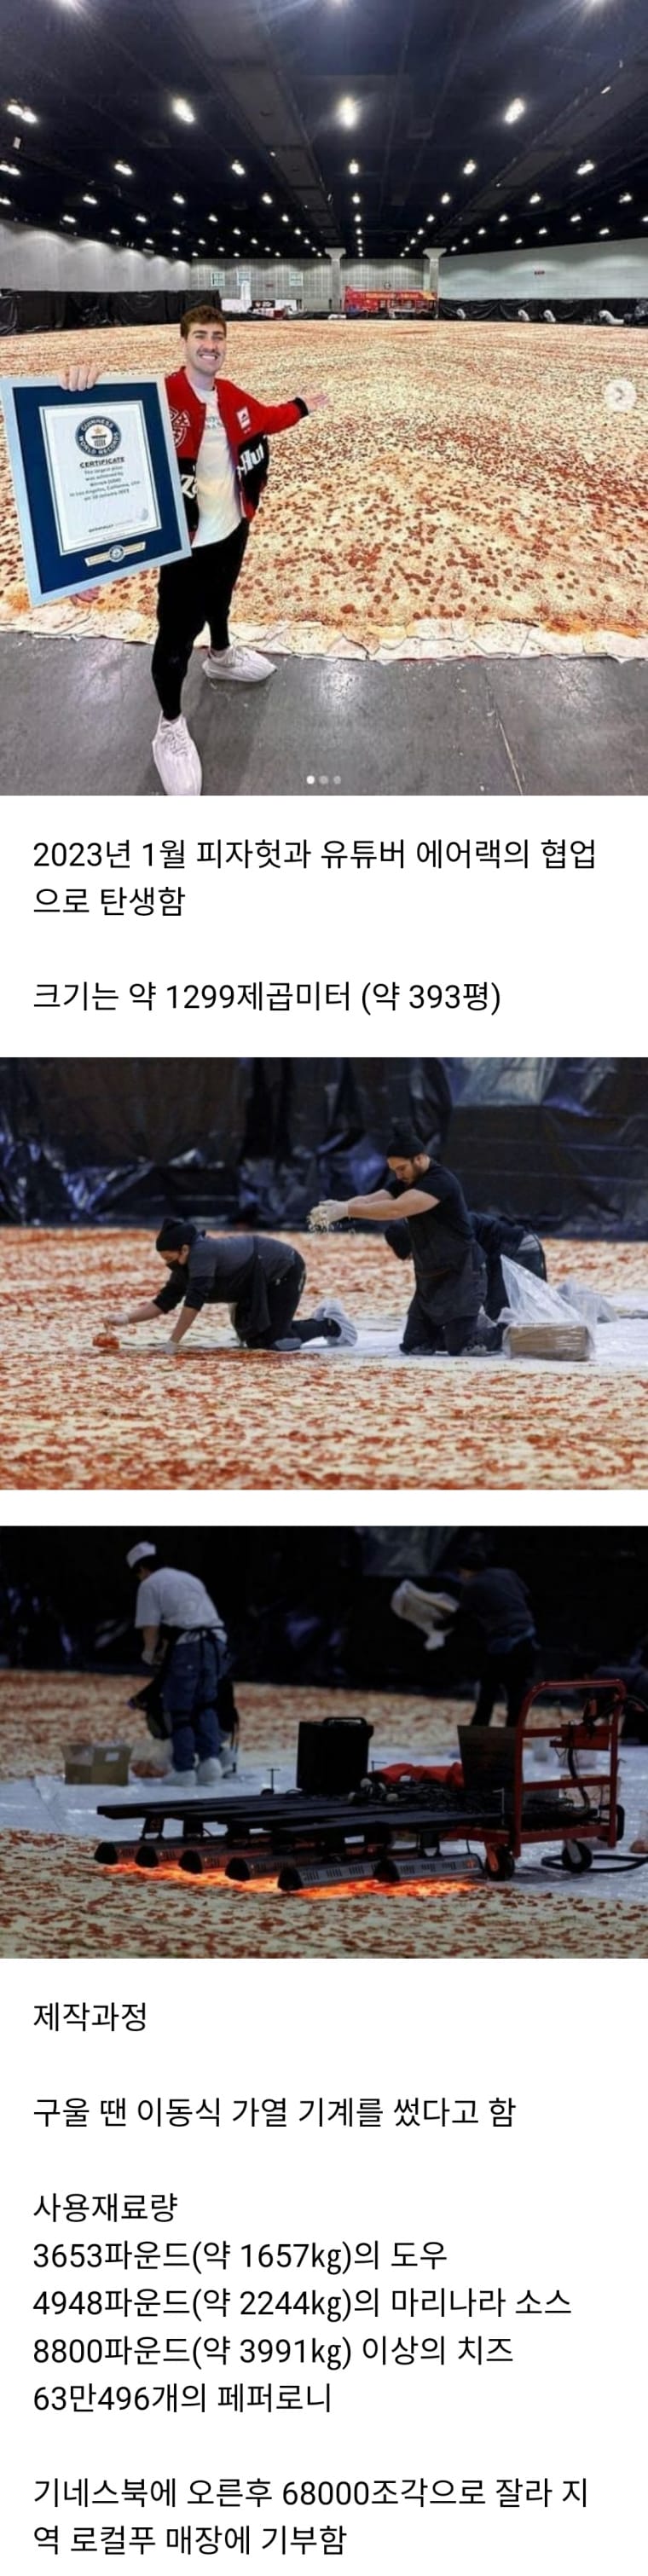 뿌려진 치즈만 4톤 !! 세계에서 가장 큰 피자